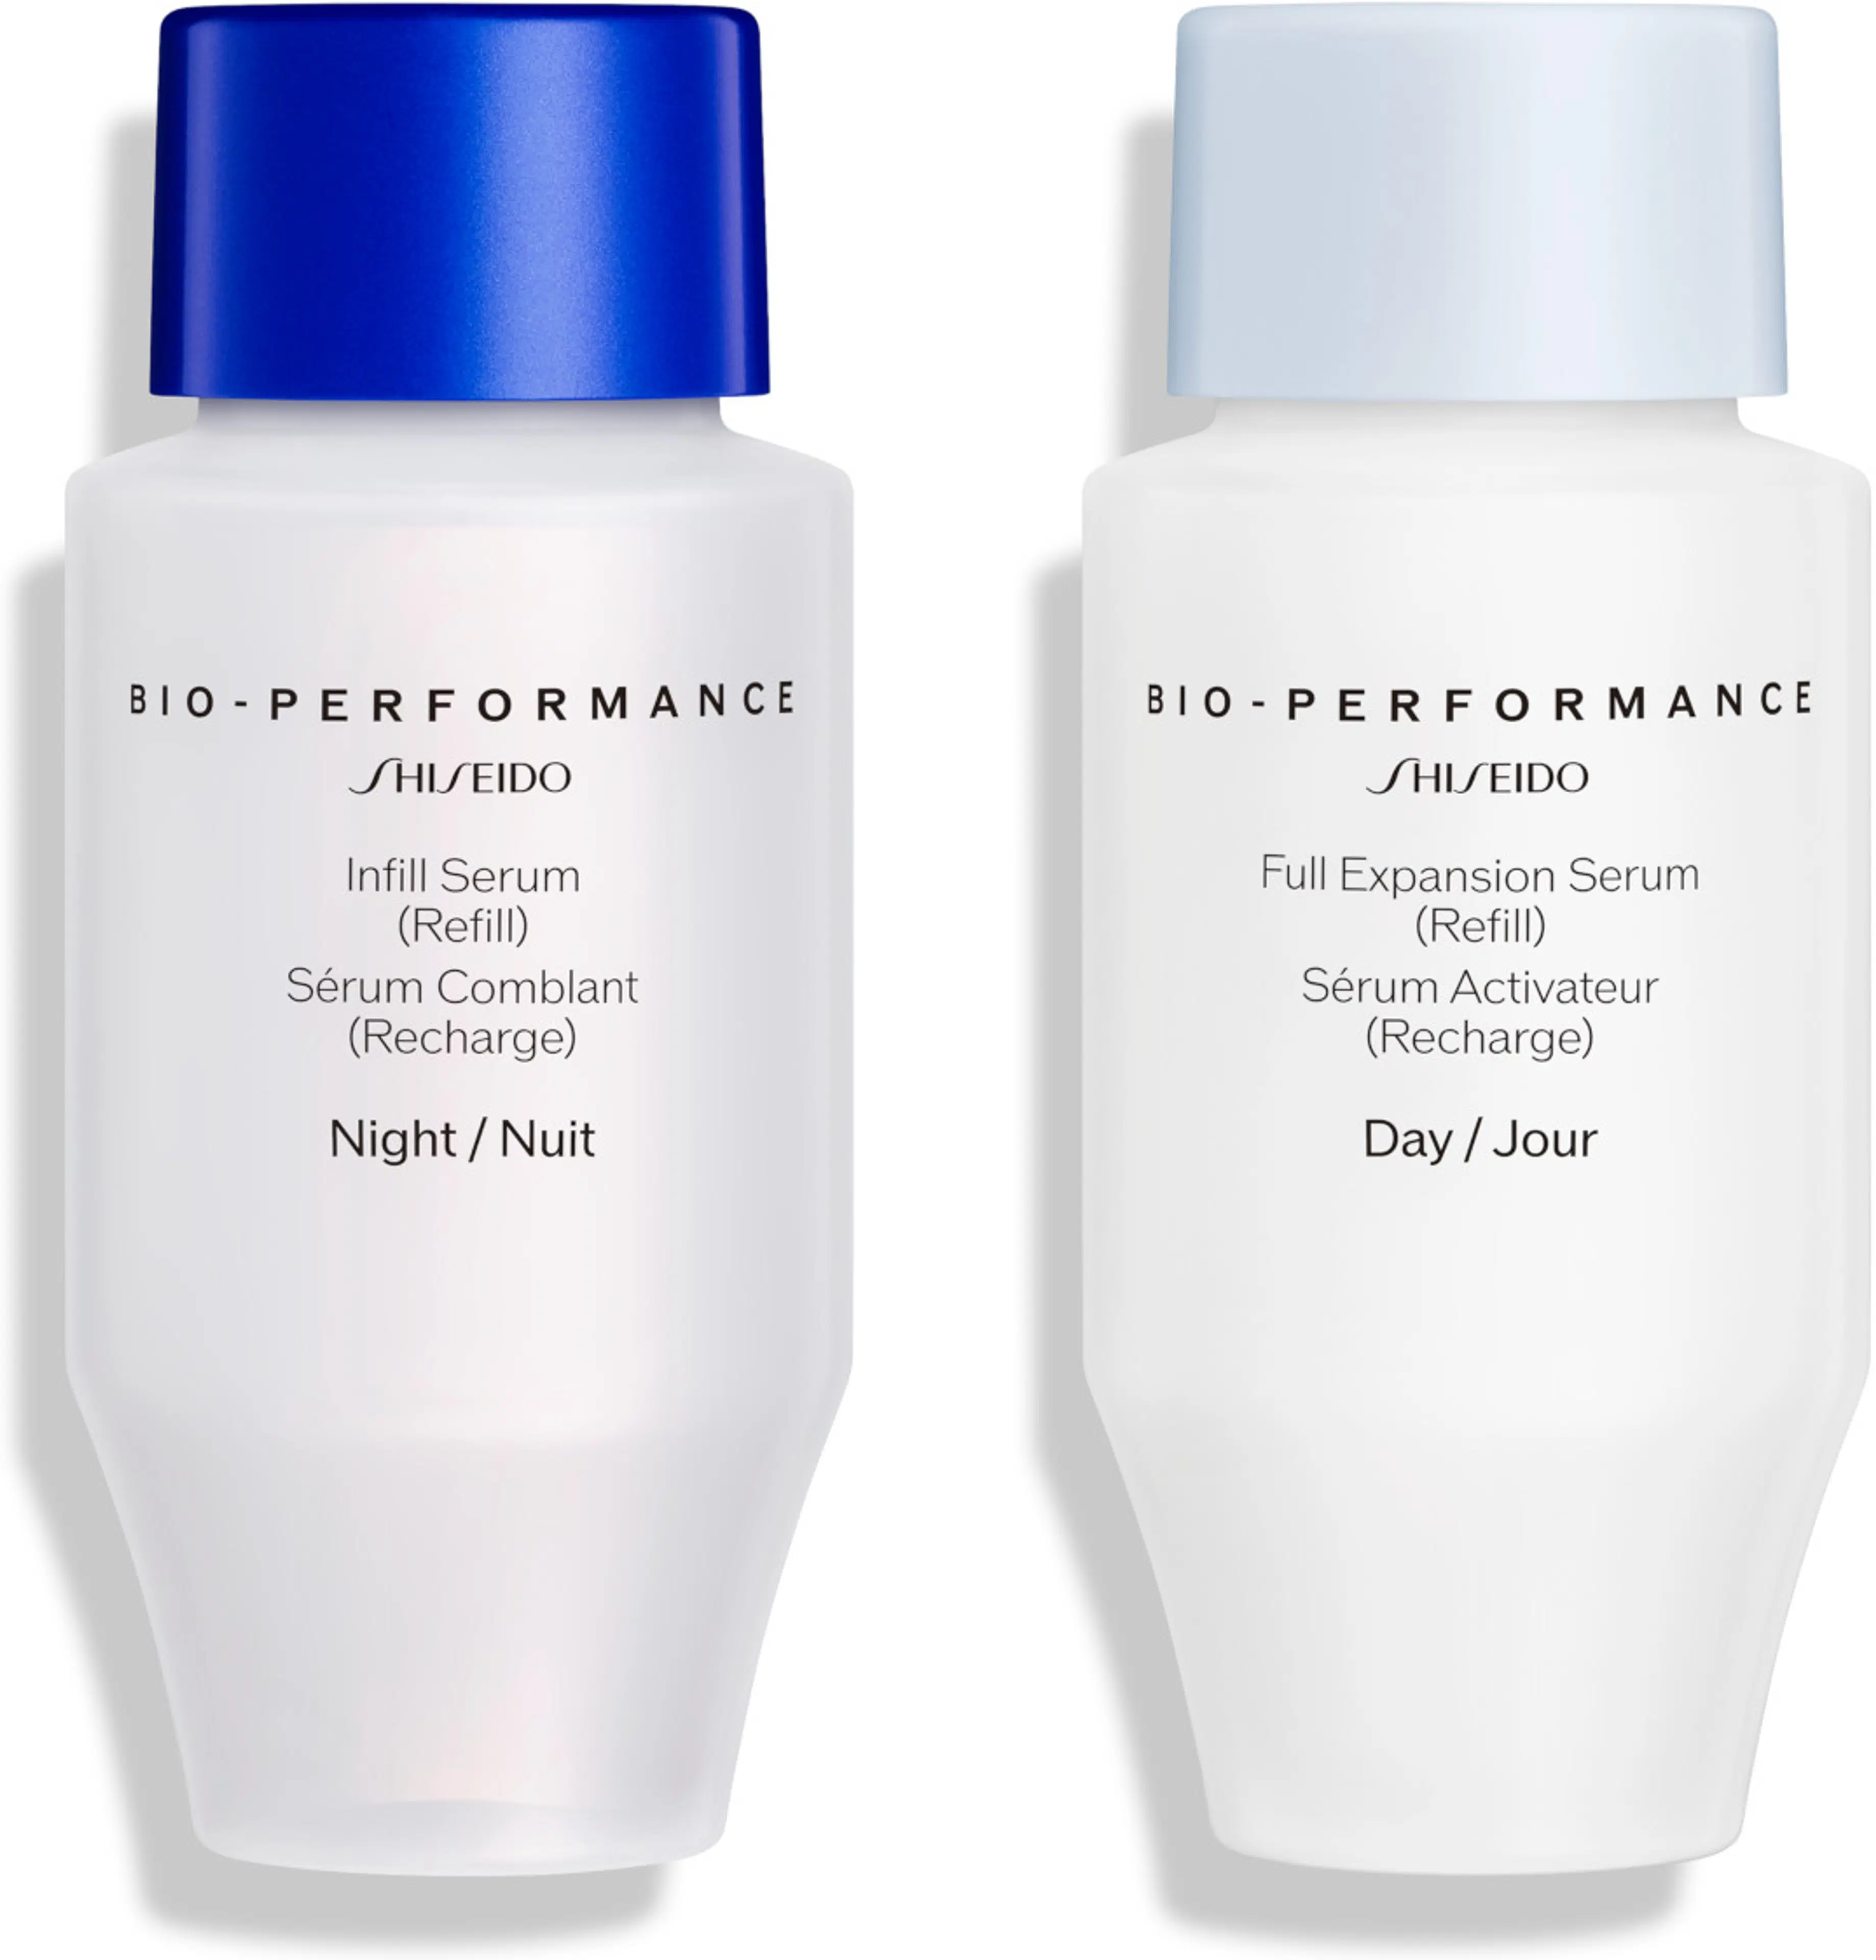 Shiseido Bio-Performance Skin Filler täyttöpakkaus seerumiduolle 2 x 30 ml